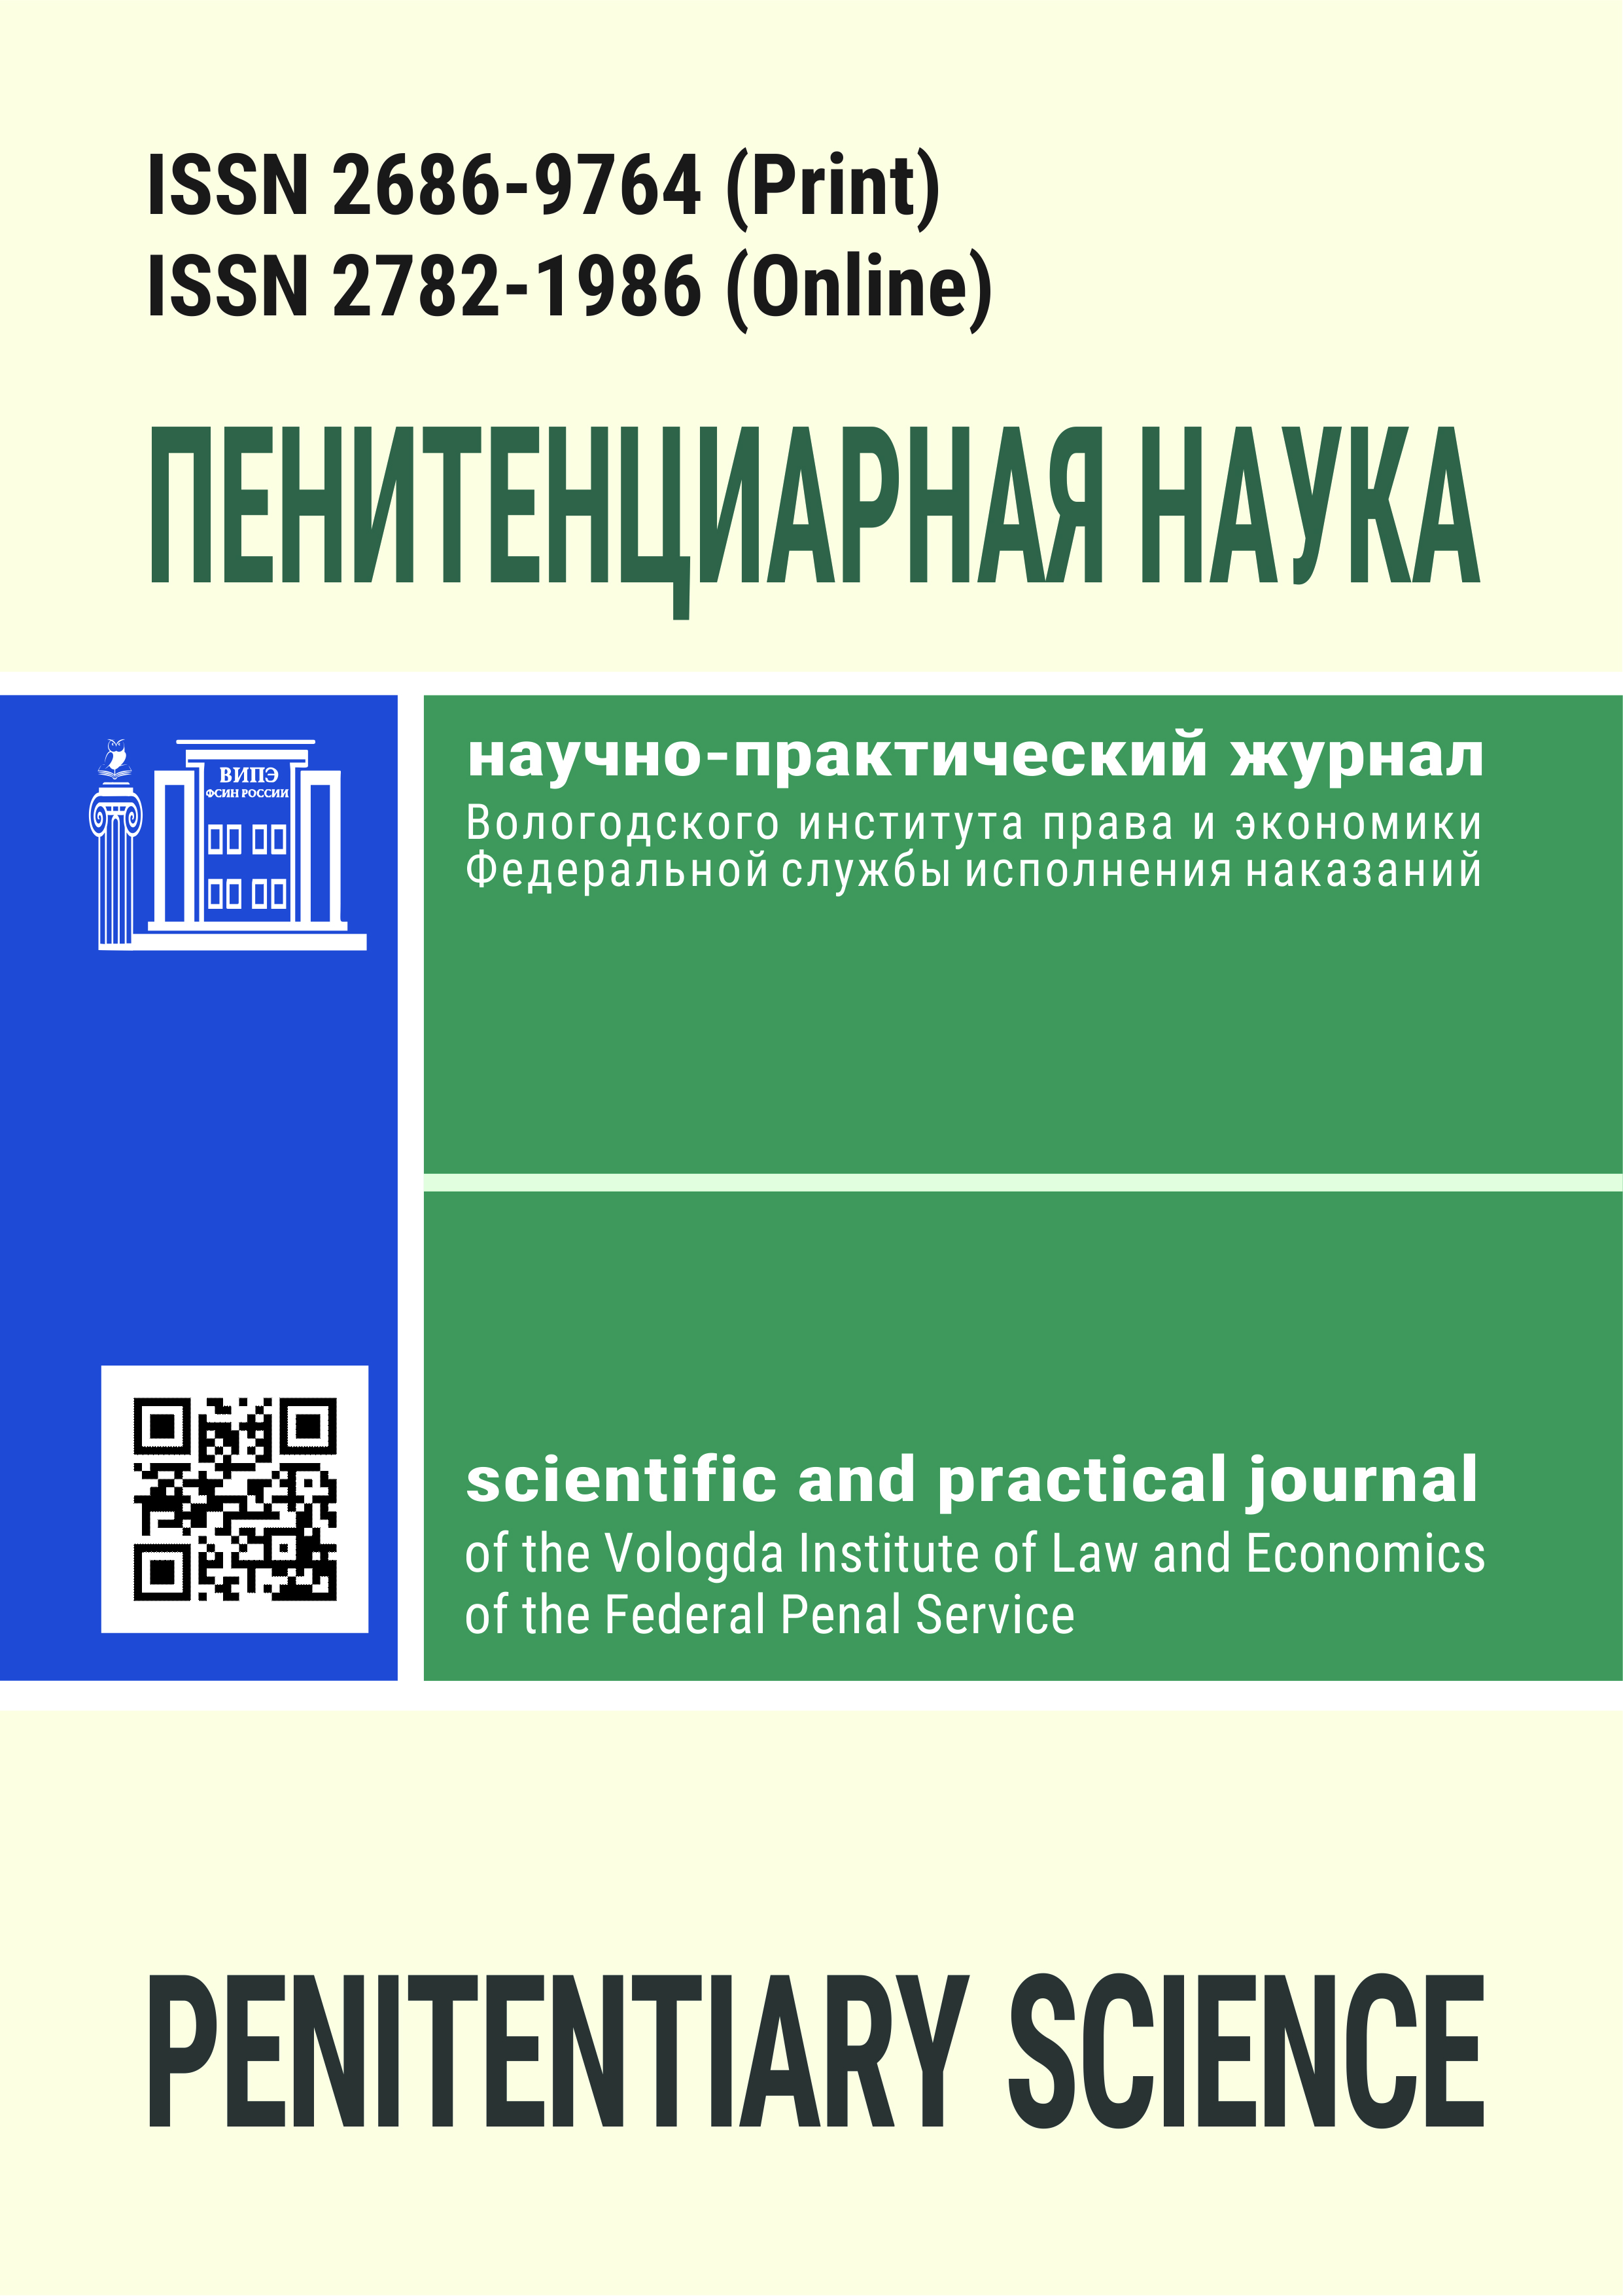 Обложка_журнал_Пенитенциарная наука_end_для сайта